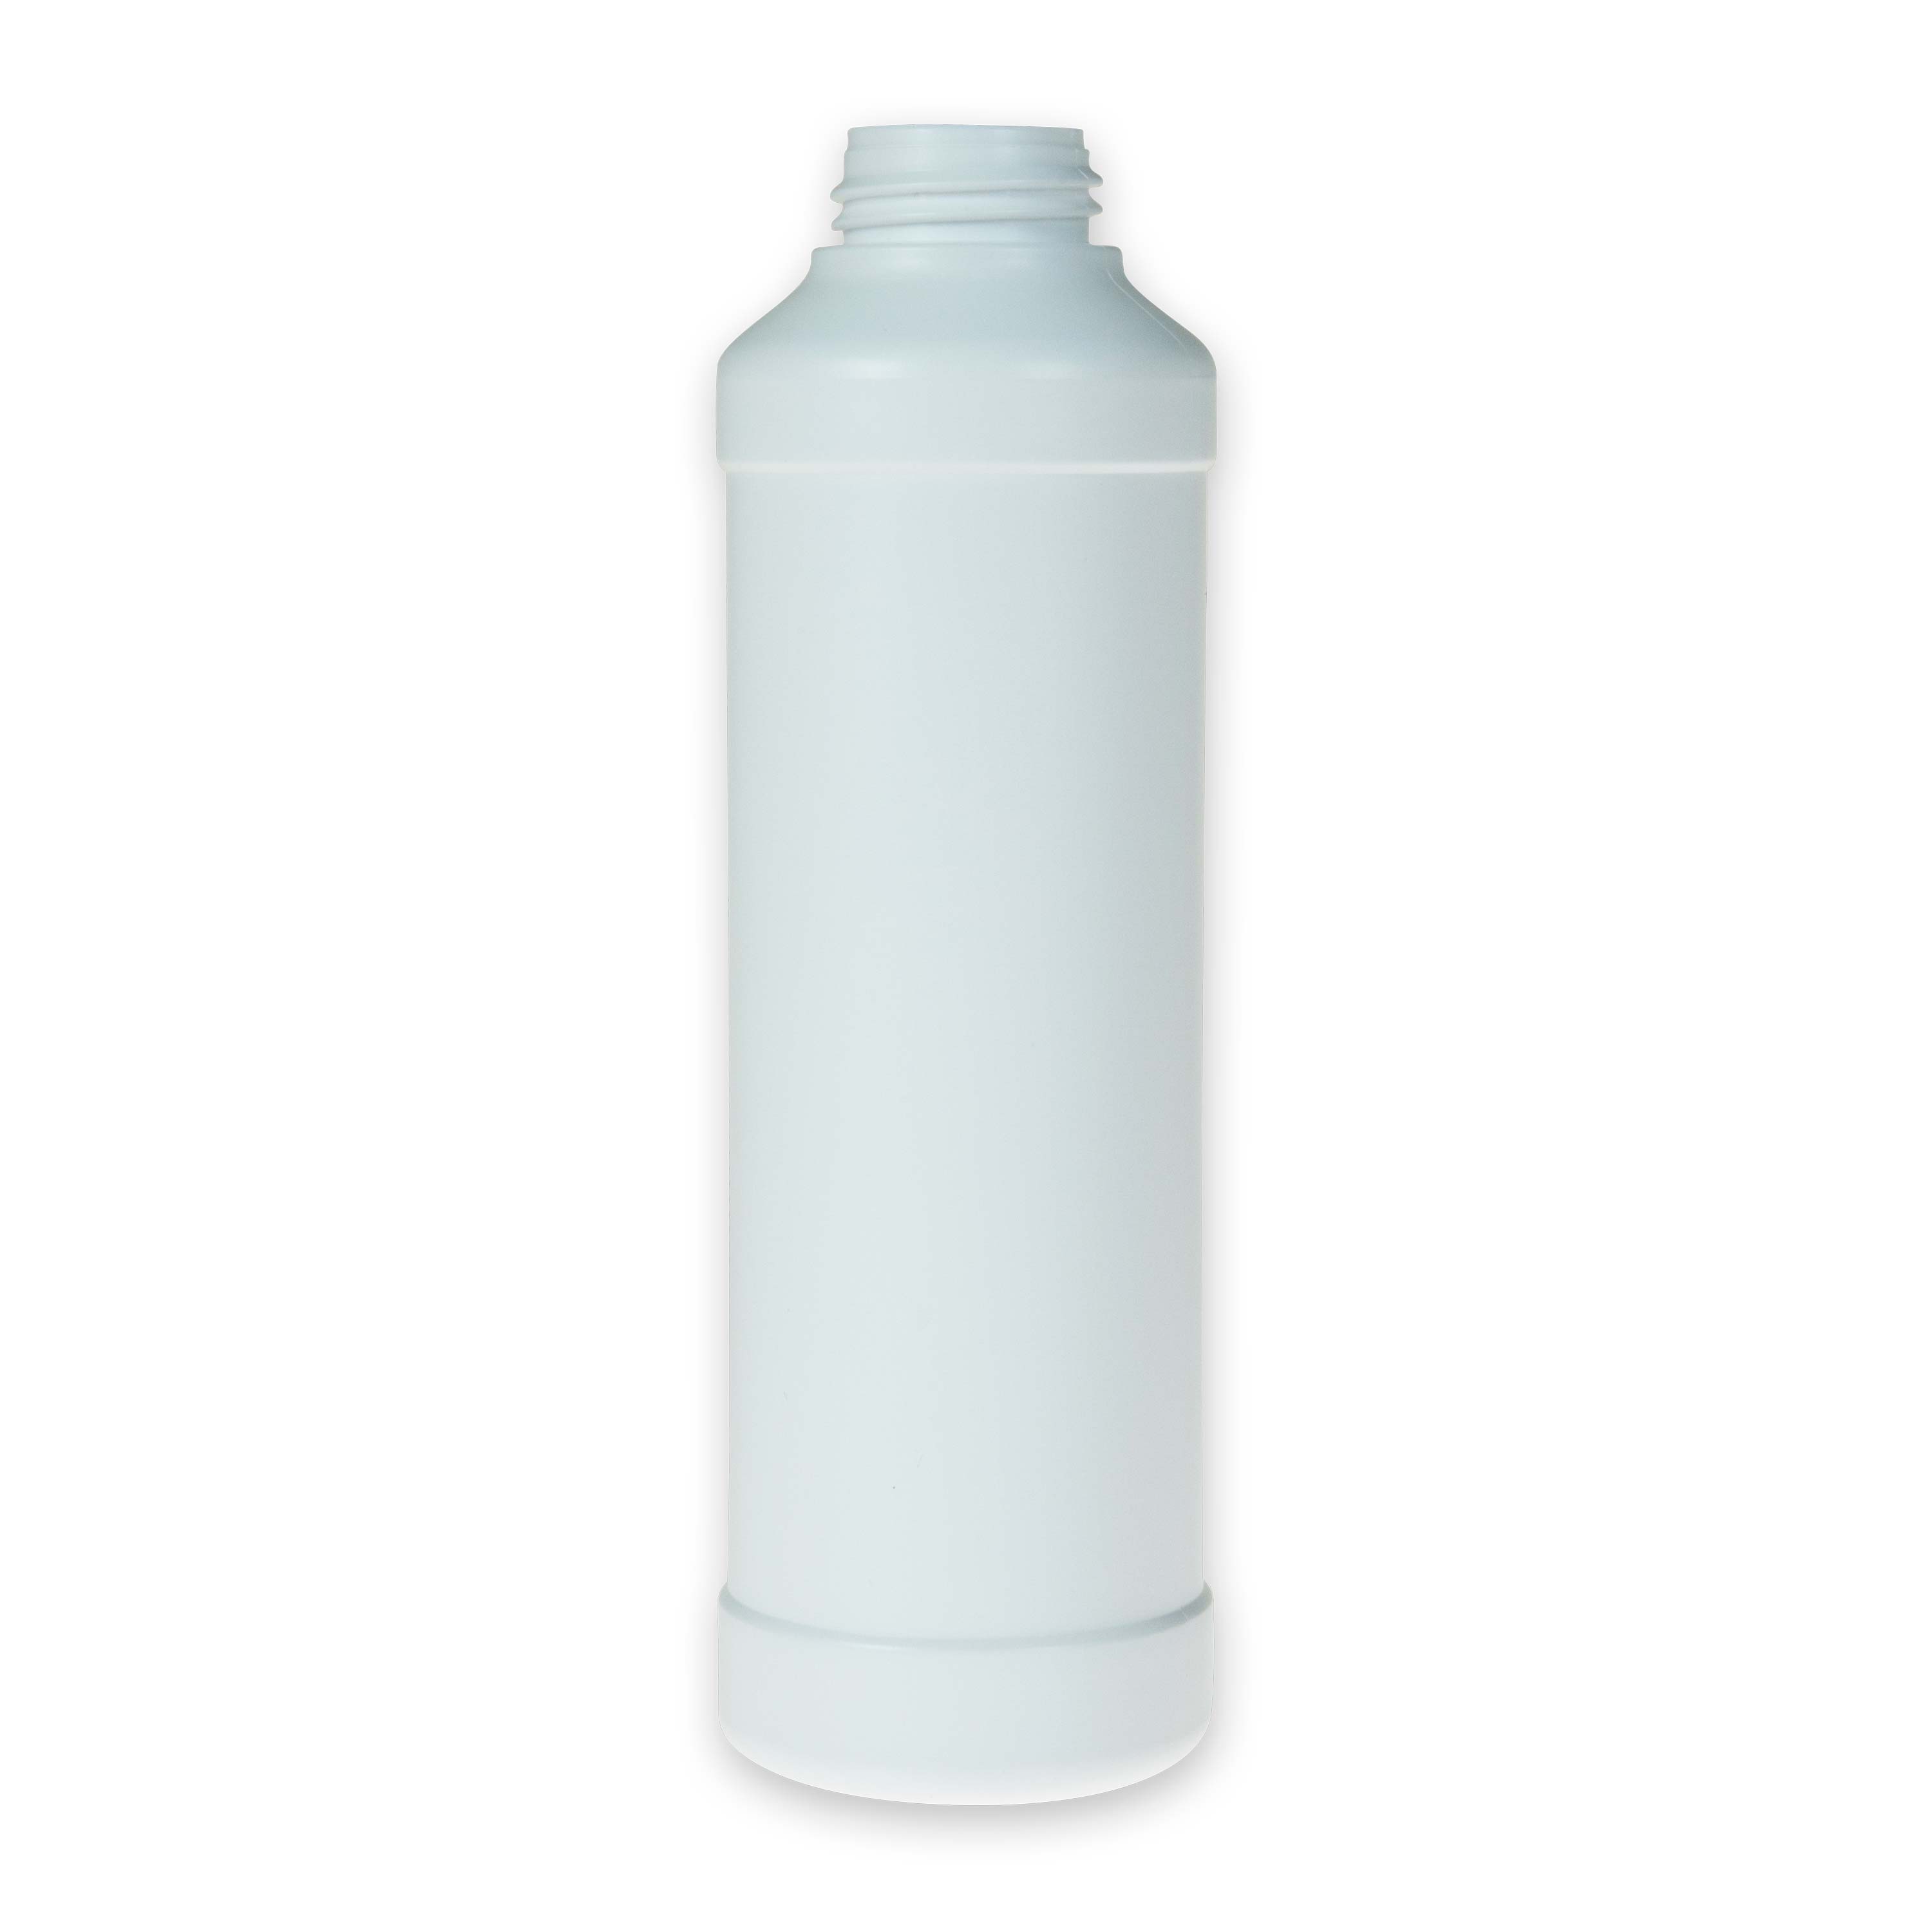 Zylindrische Rundflasche aus HDPE weiß 250 ml